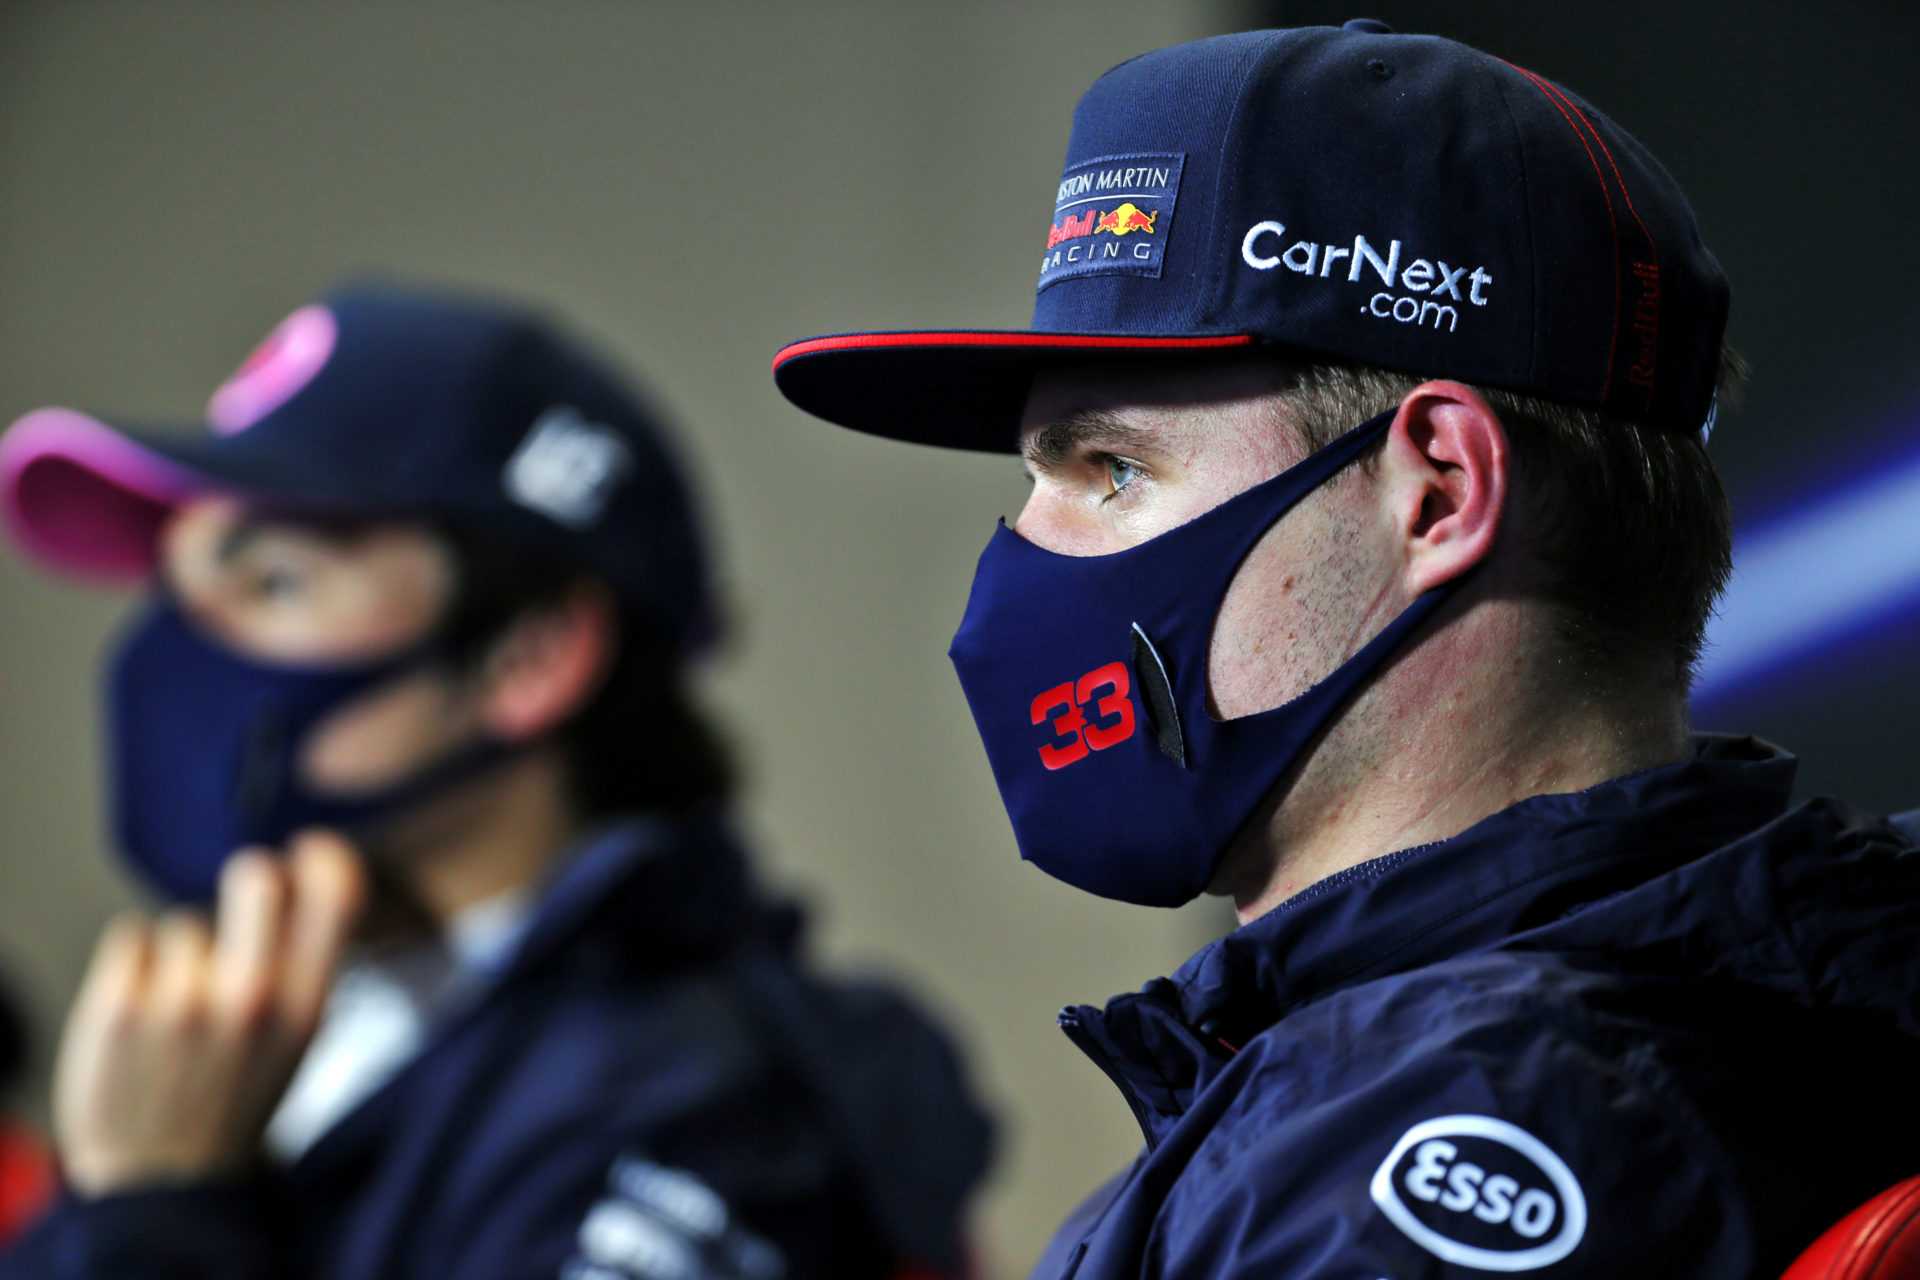 Le Major Red Bull Botch a coûté cher à Max Verstappen pendant le Grand Prix de Turquie